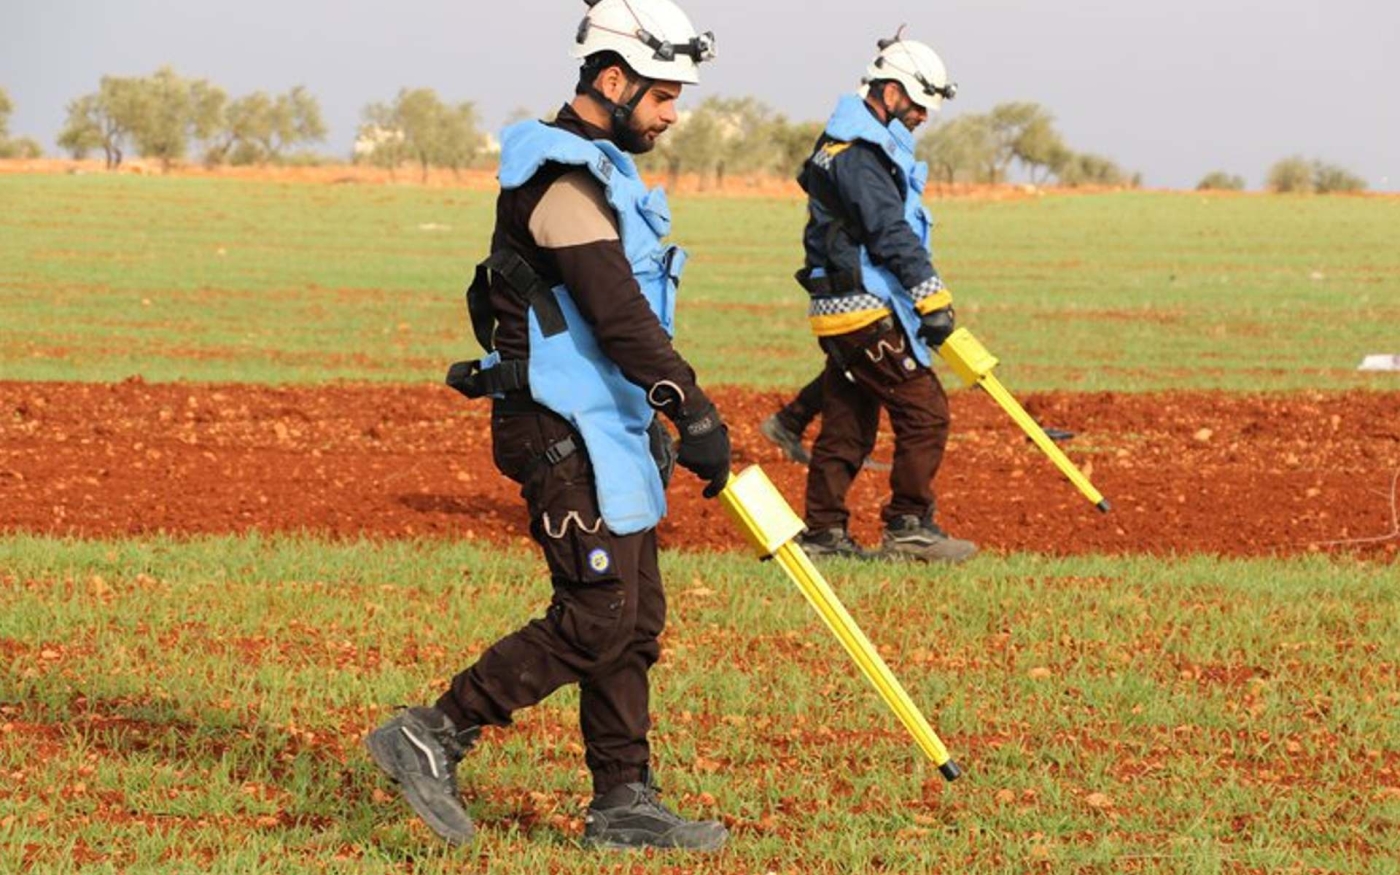 Des volontaires des Casques blancs recherchent des munitions non explosées dans des terres agricoles syriennes (Défense civile syrienne)